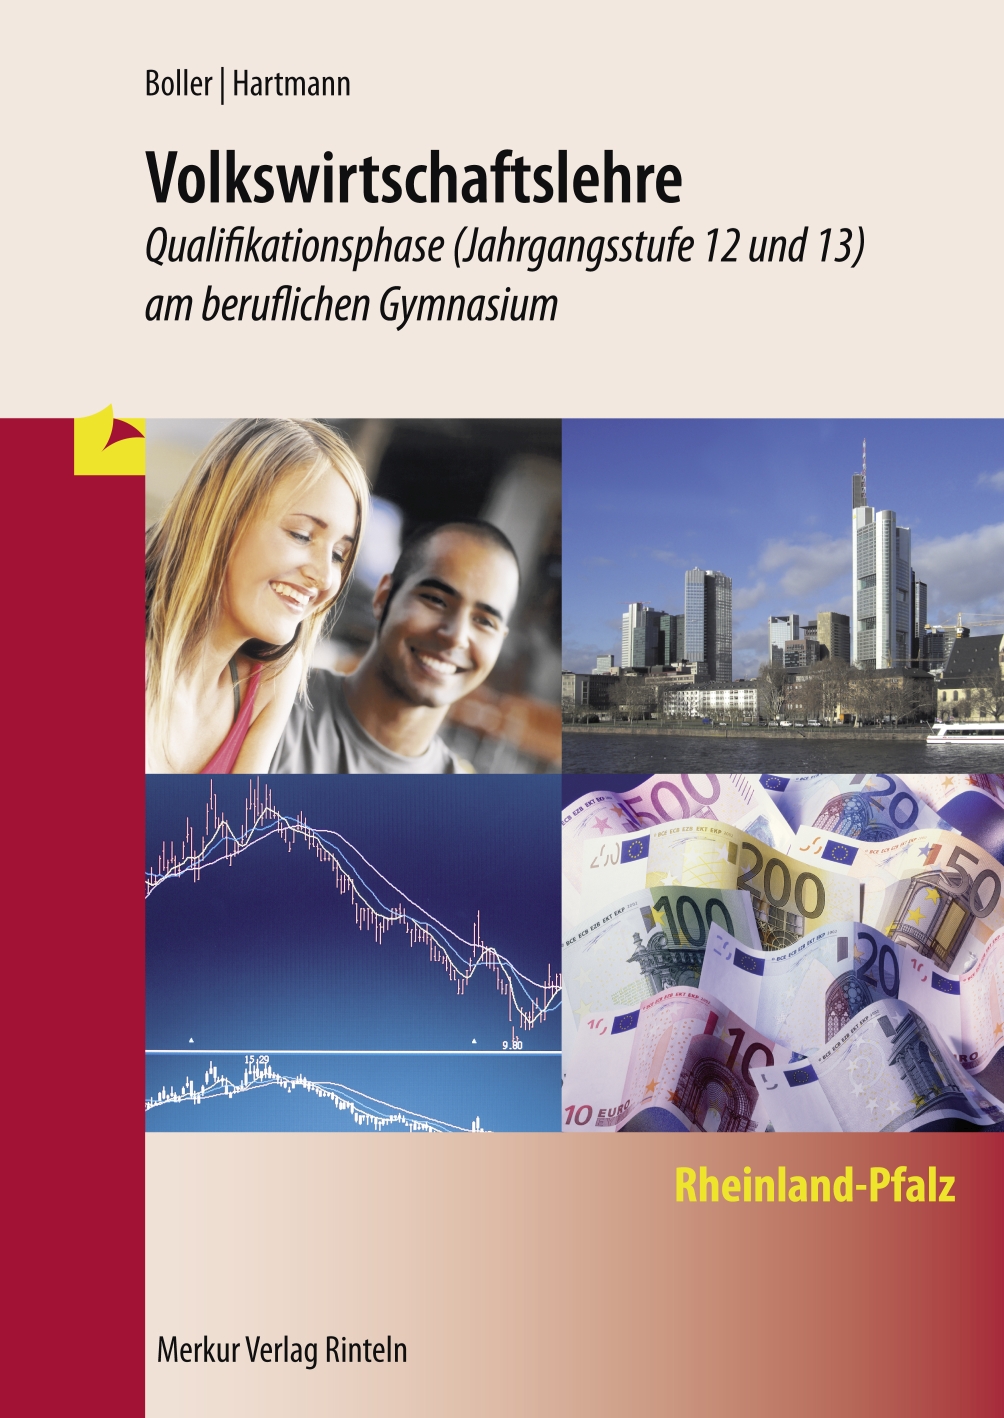 Volkswirtschaftslehre - Qualifikationsphase - Jahrgangsstufe 12 und 13 (Rheinland-Pfalz)